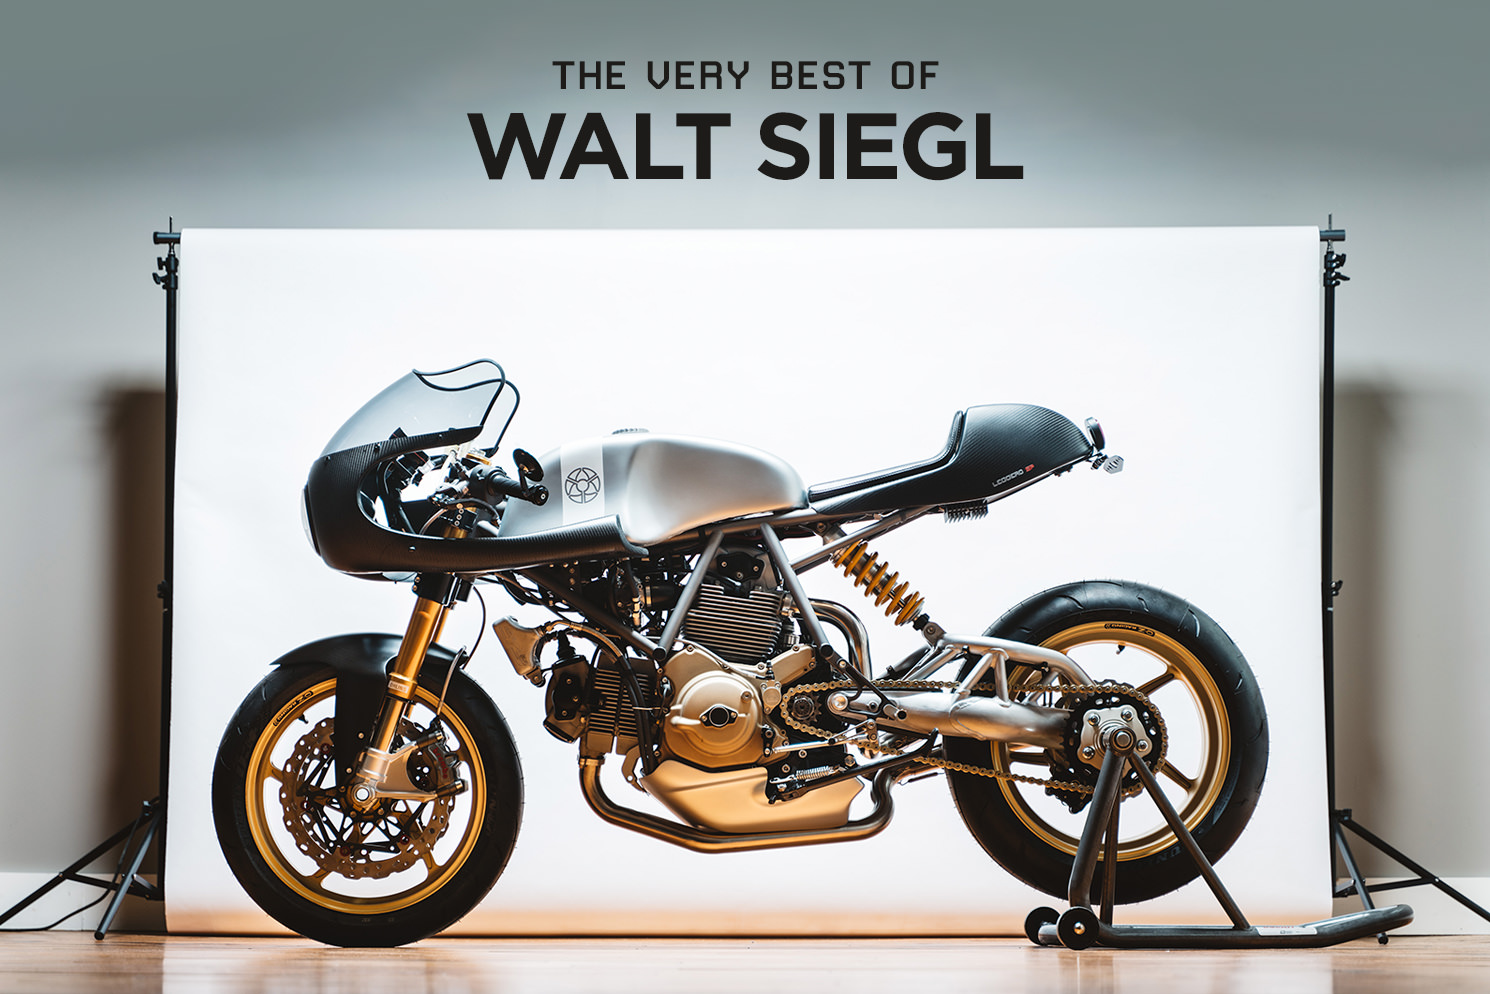 Top 5 custom motorcycles by Walt Siegl